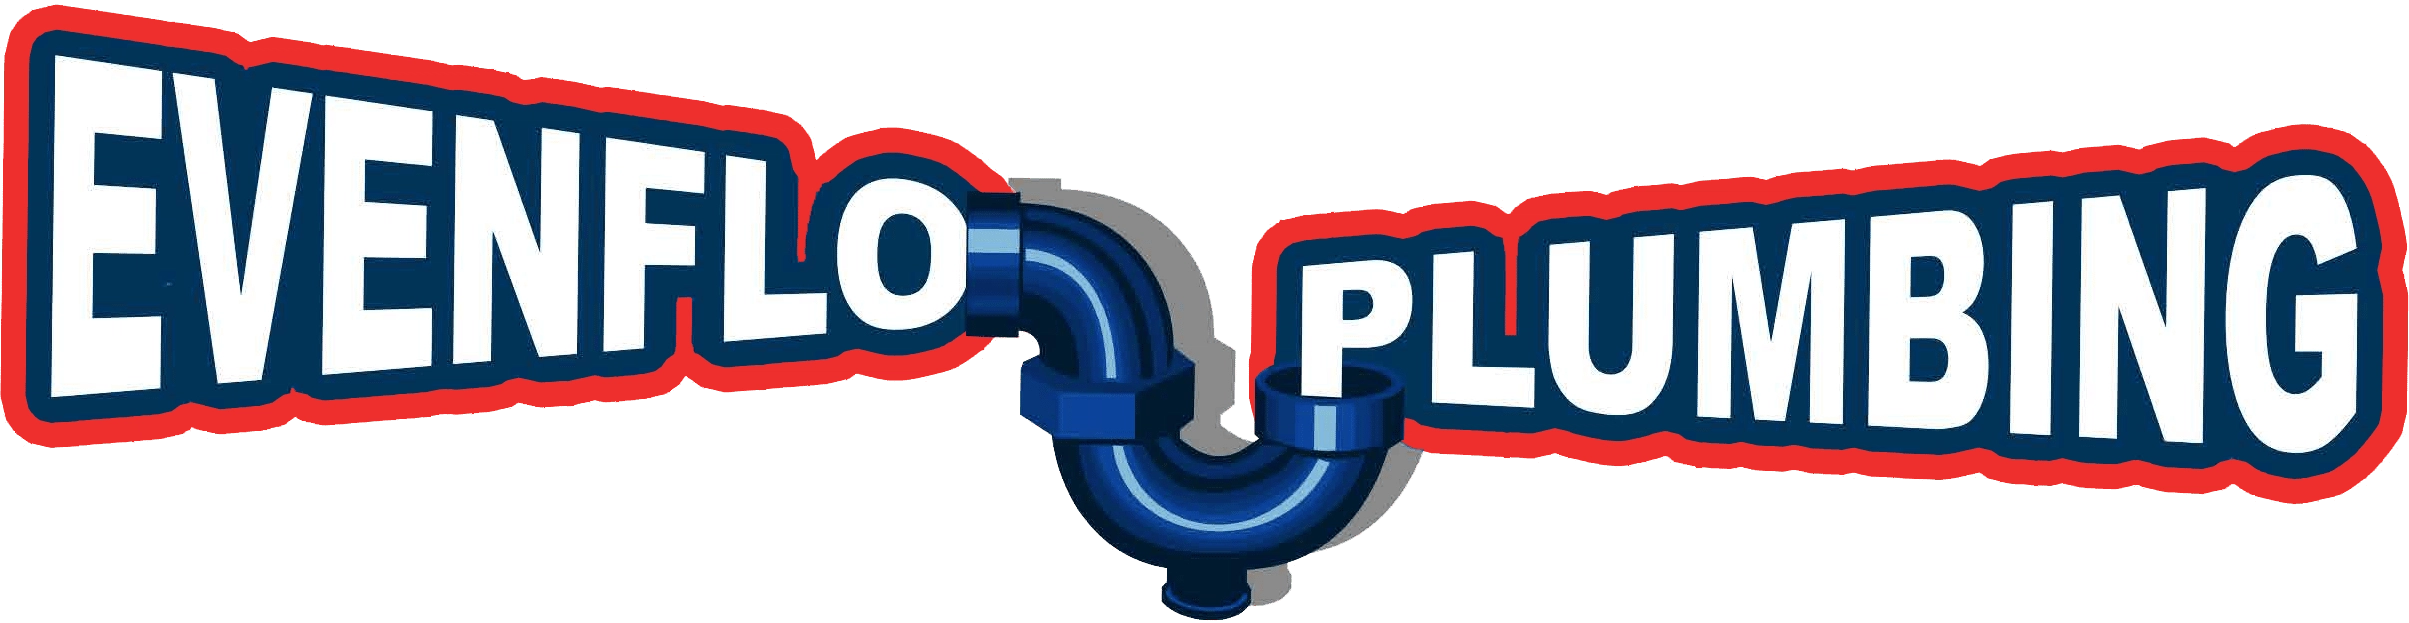 Evenflo Plumbing LLC Logo